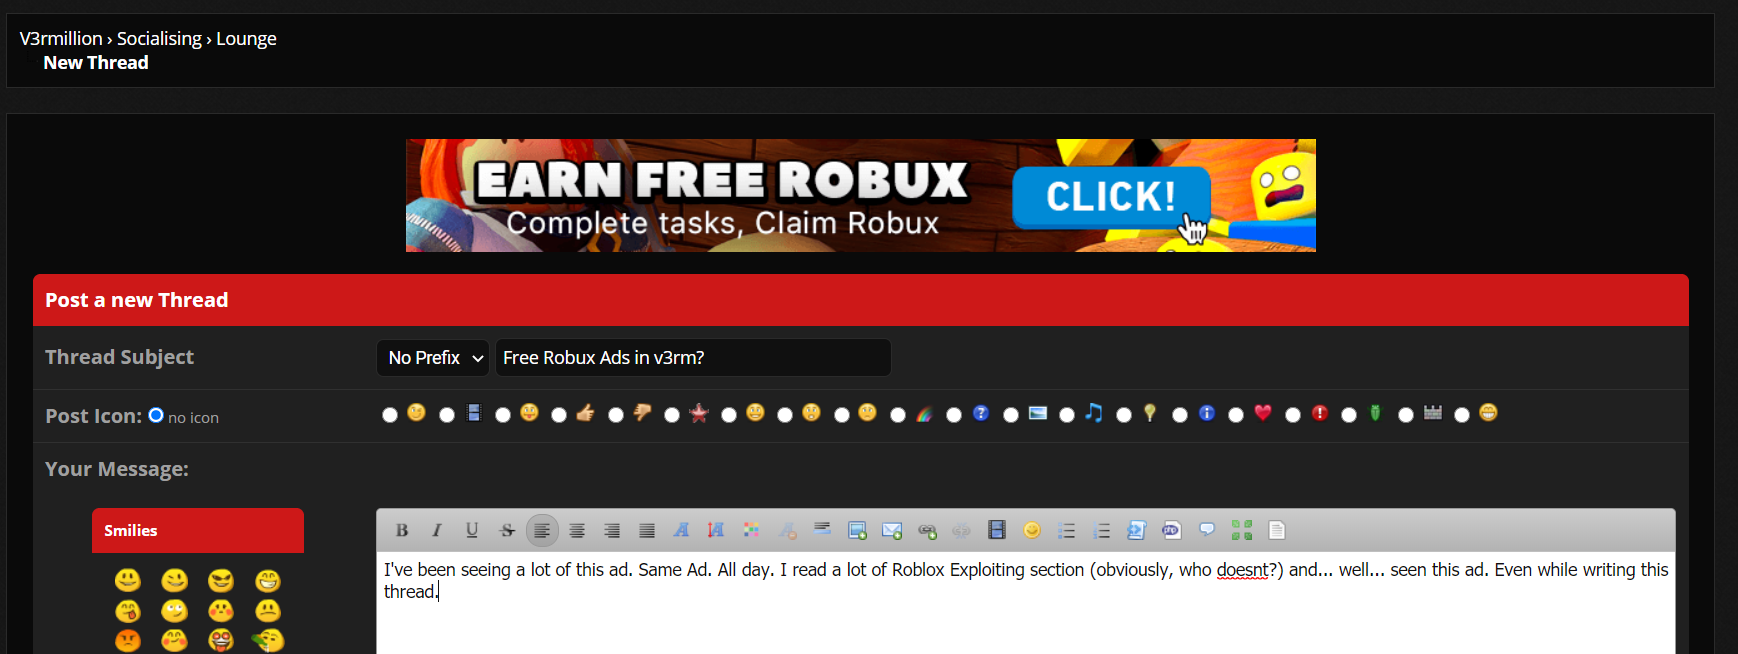 Roblox Free Robux Ad